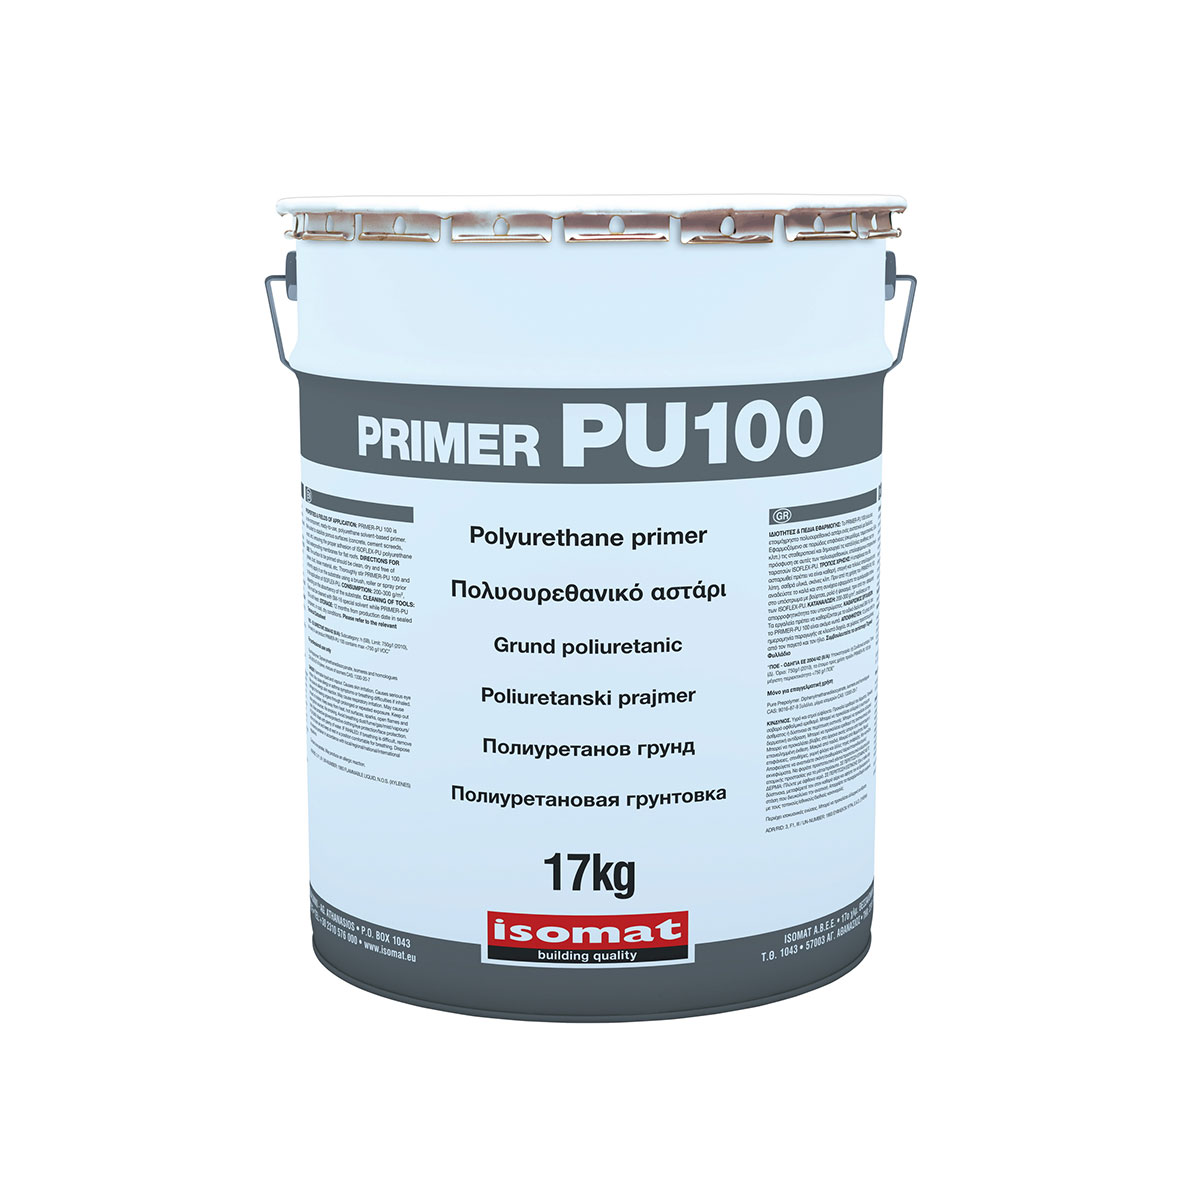 PRIMER - PU 100